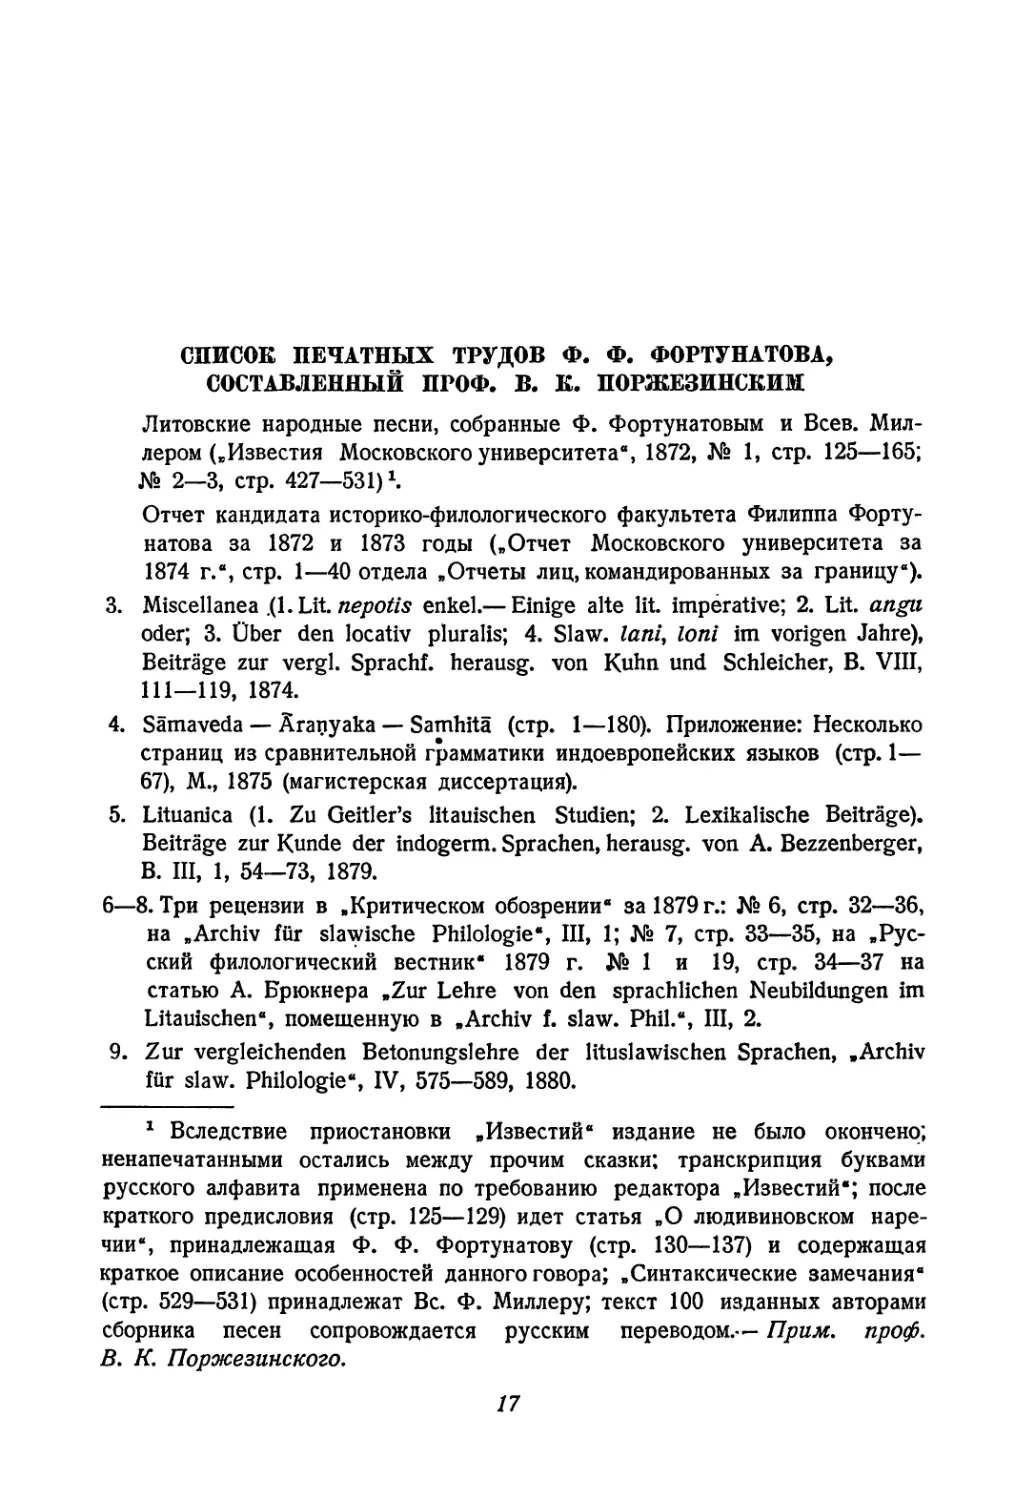 Список печатных трудов Ф. Ф. Фортунатова, составленный проф. В. К. Поржезинским